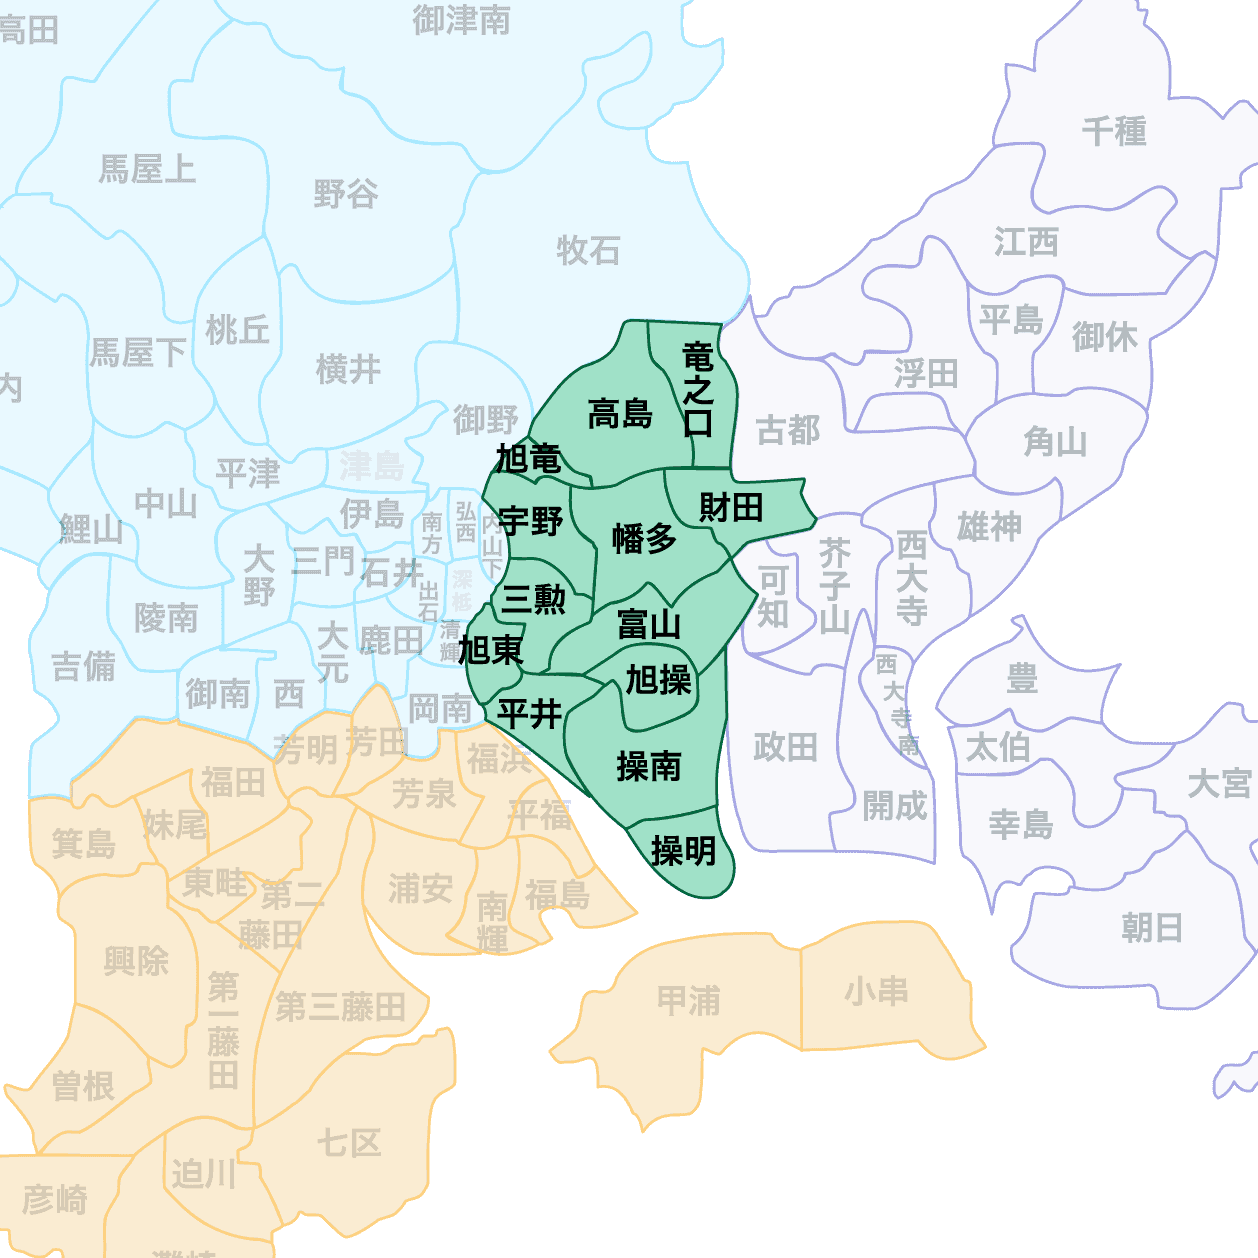 岡山市中区 町内会マップ